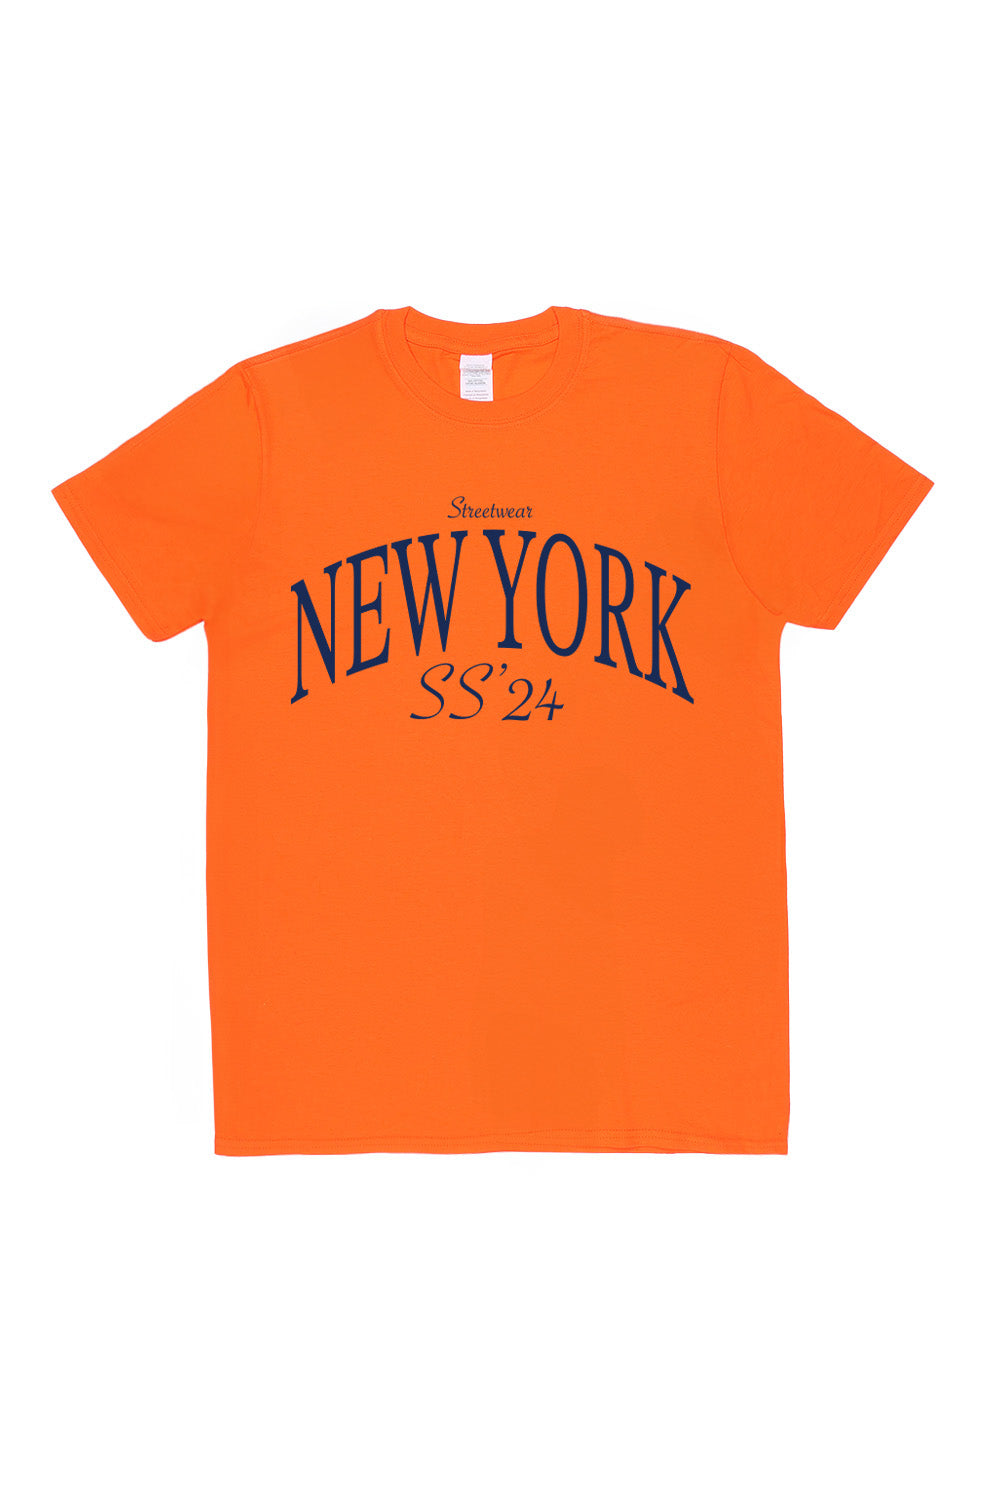 New York T-Shirt in Orange (Custom Packs)